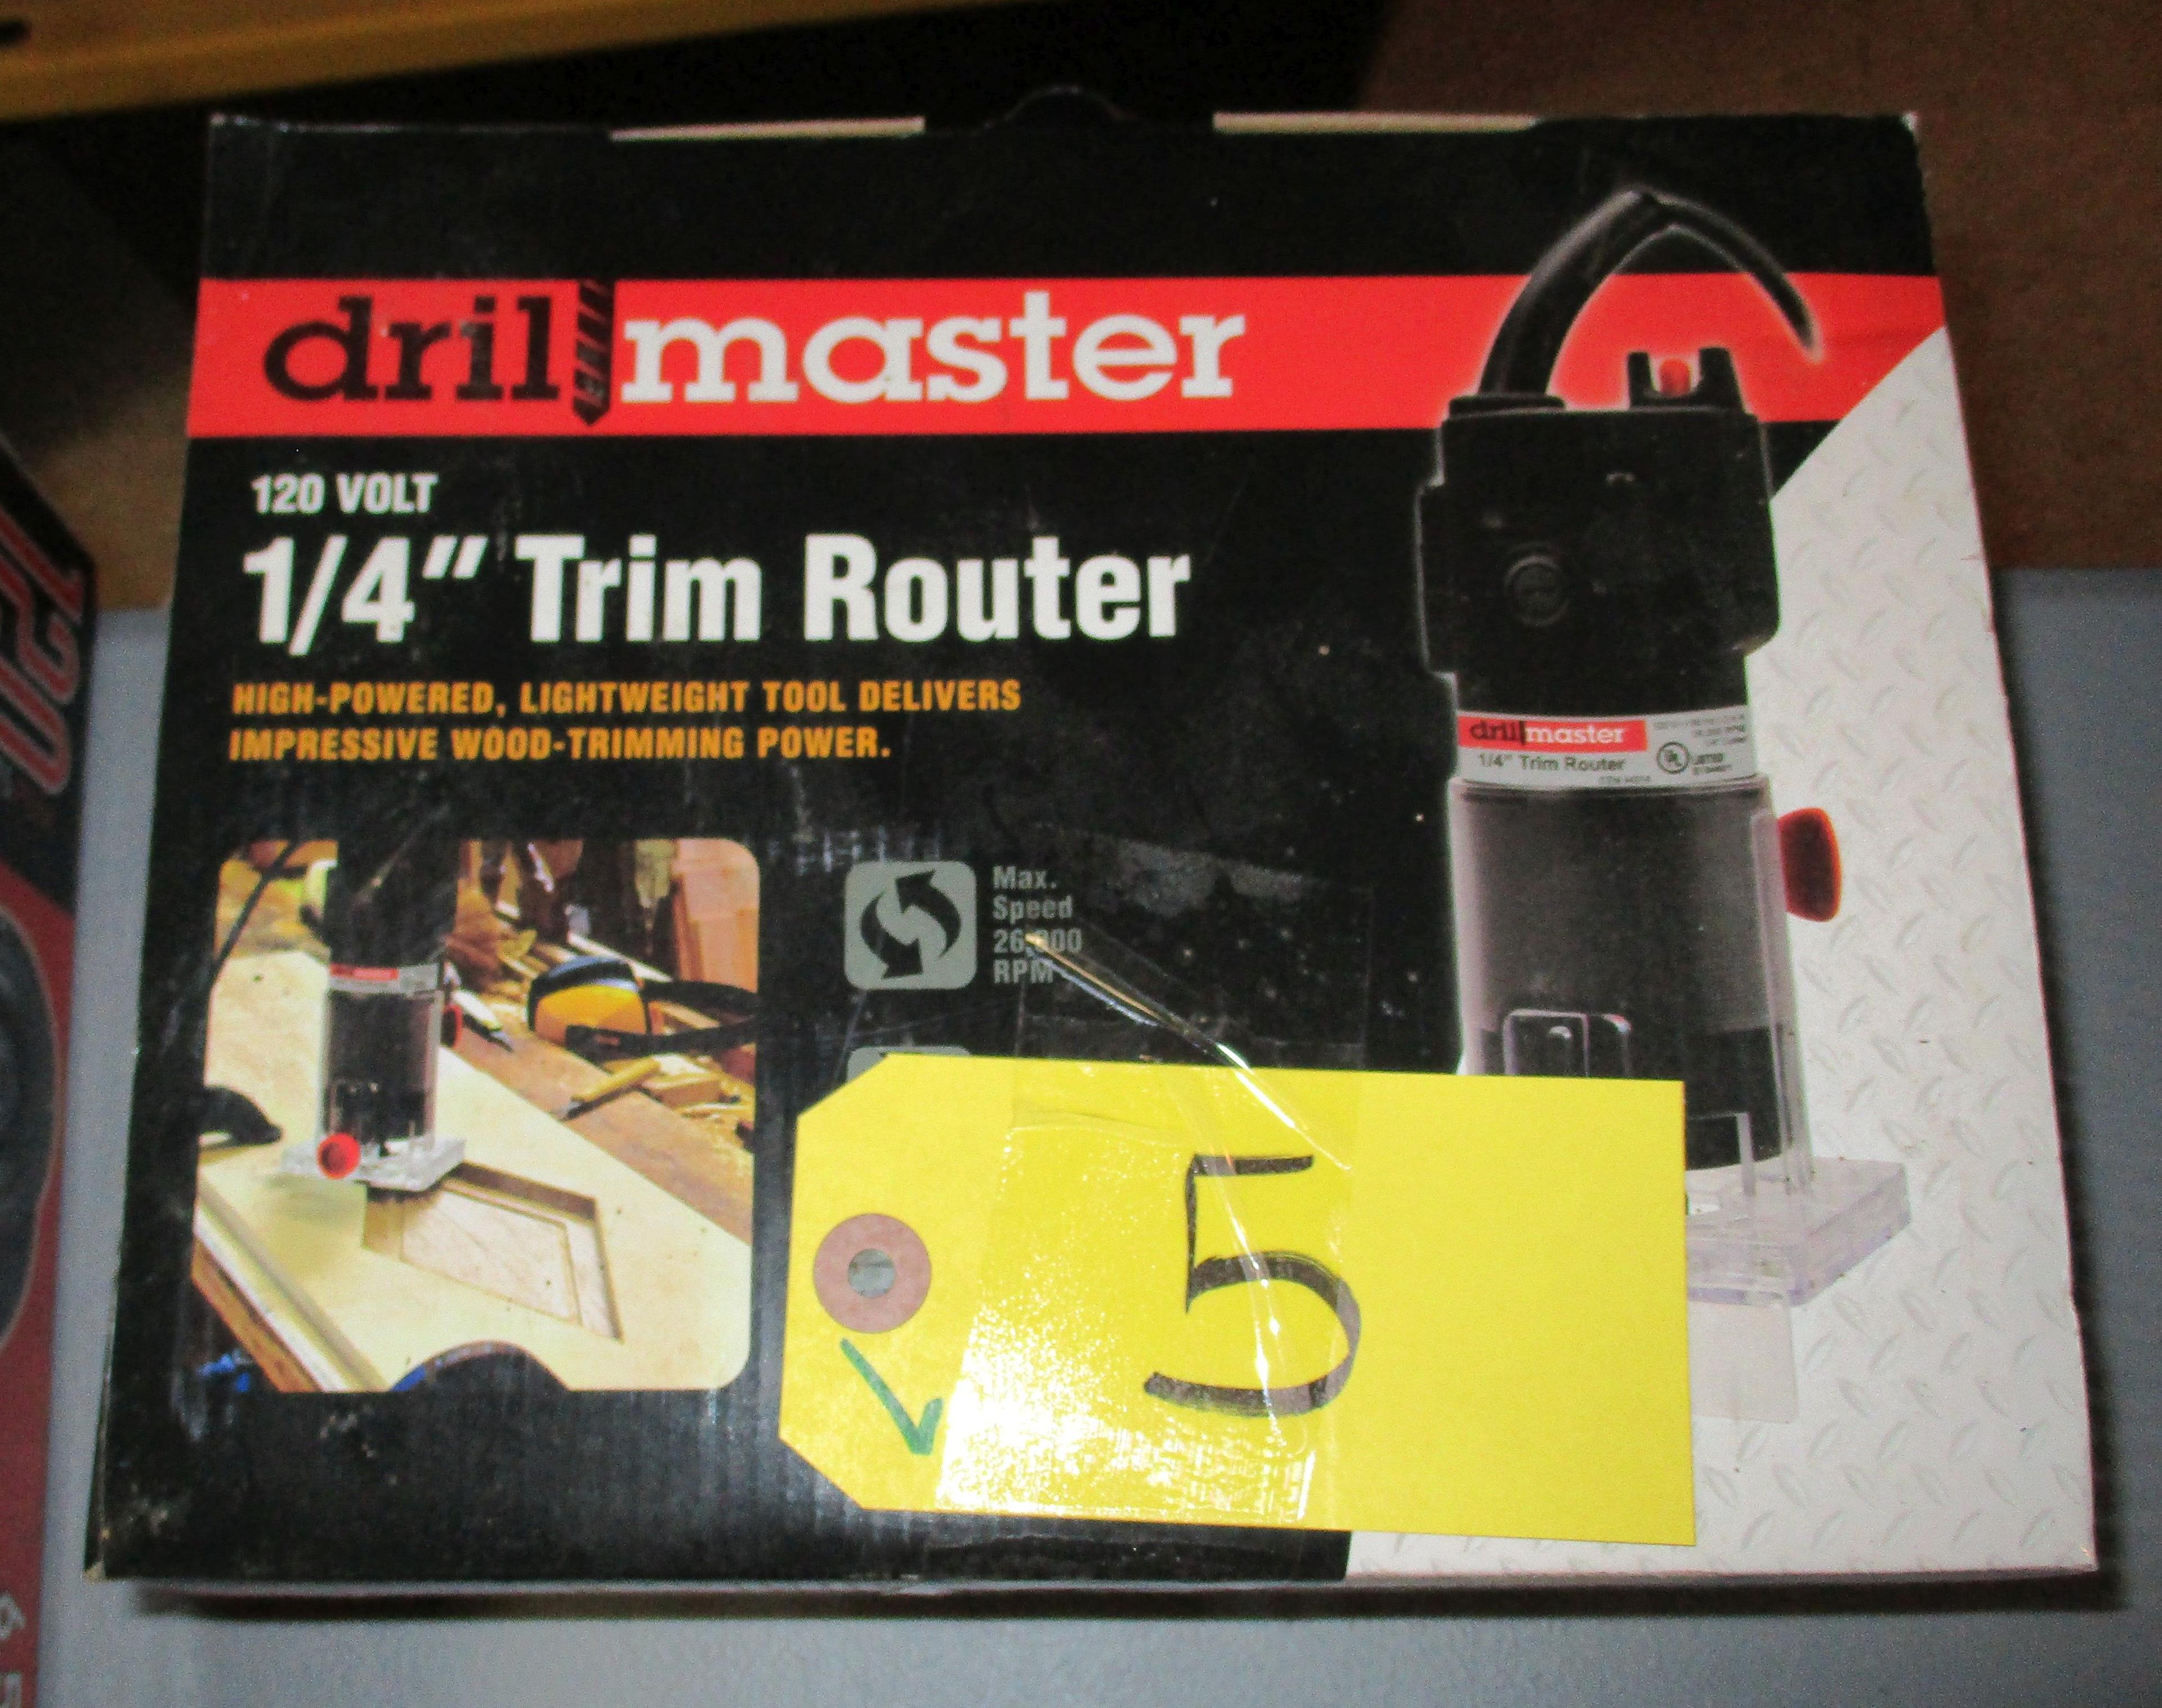 1/4" Trim Router